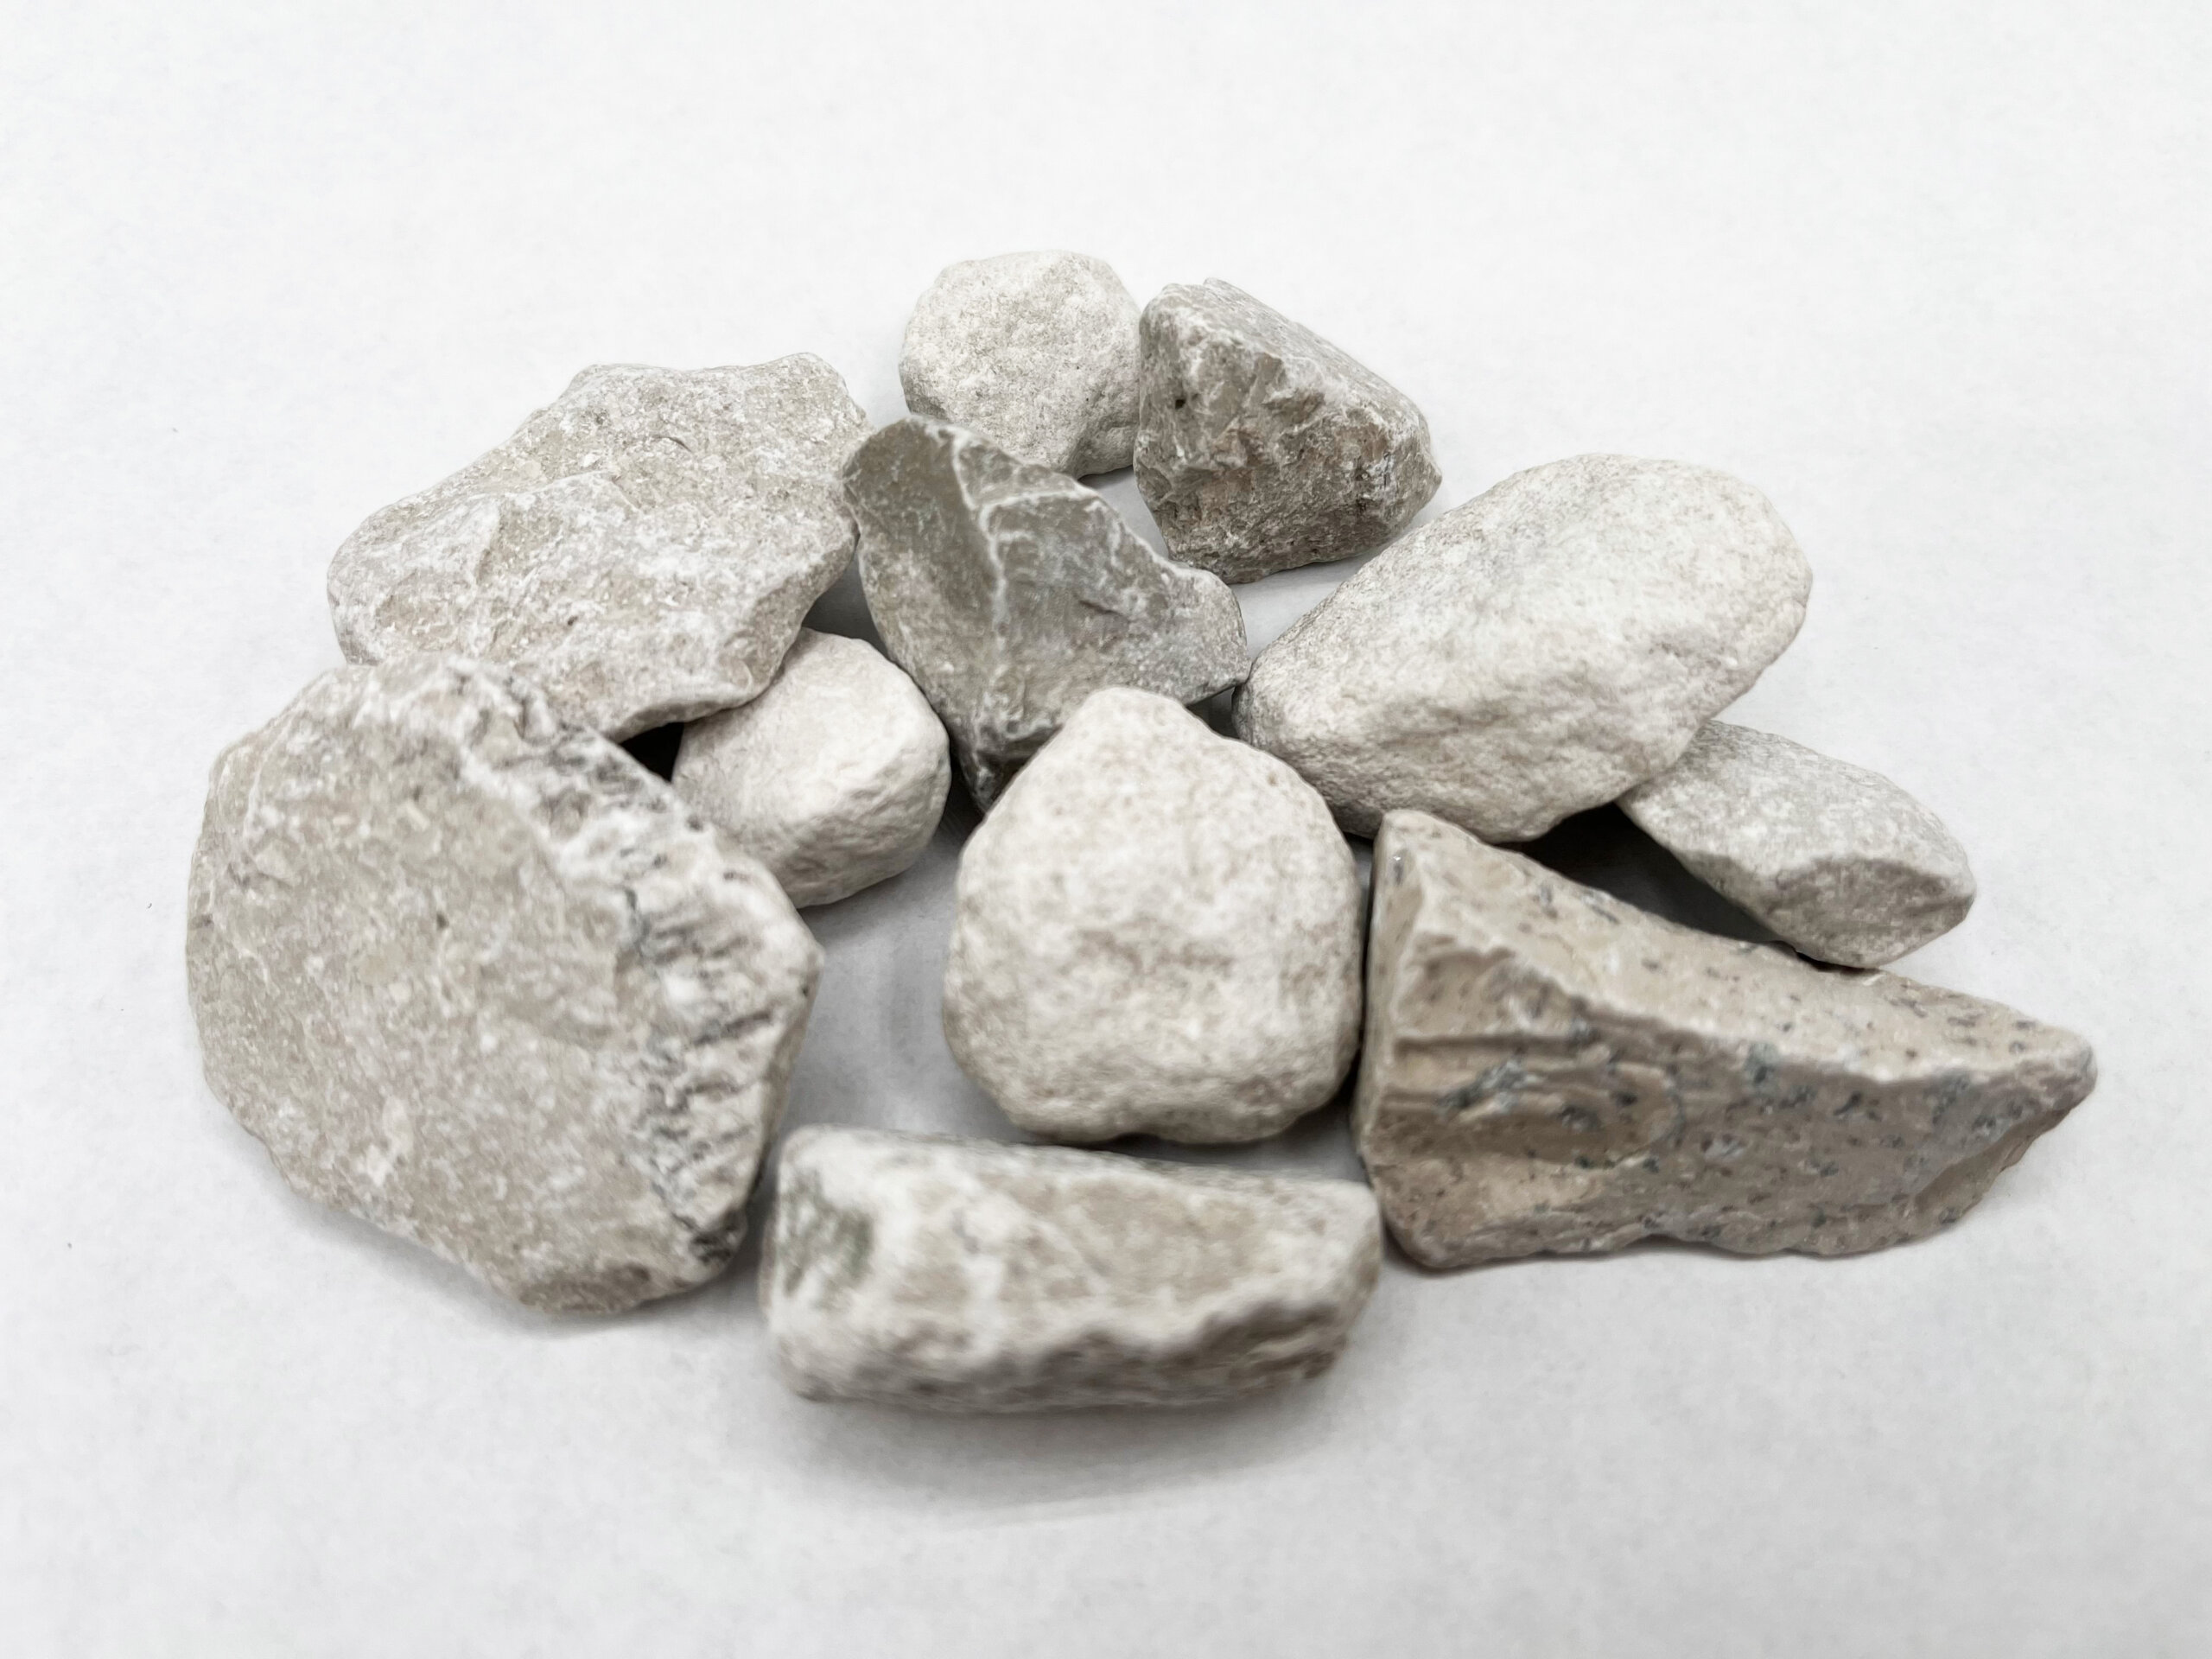 NorthRock® Premium White Rock - TCC Materials